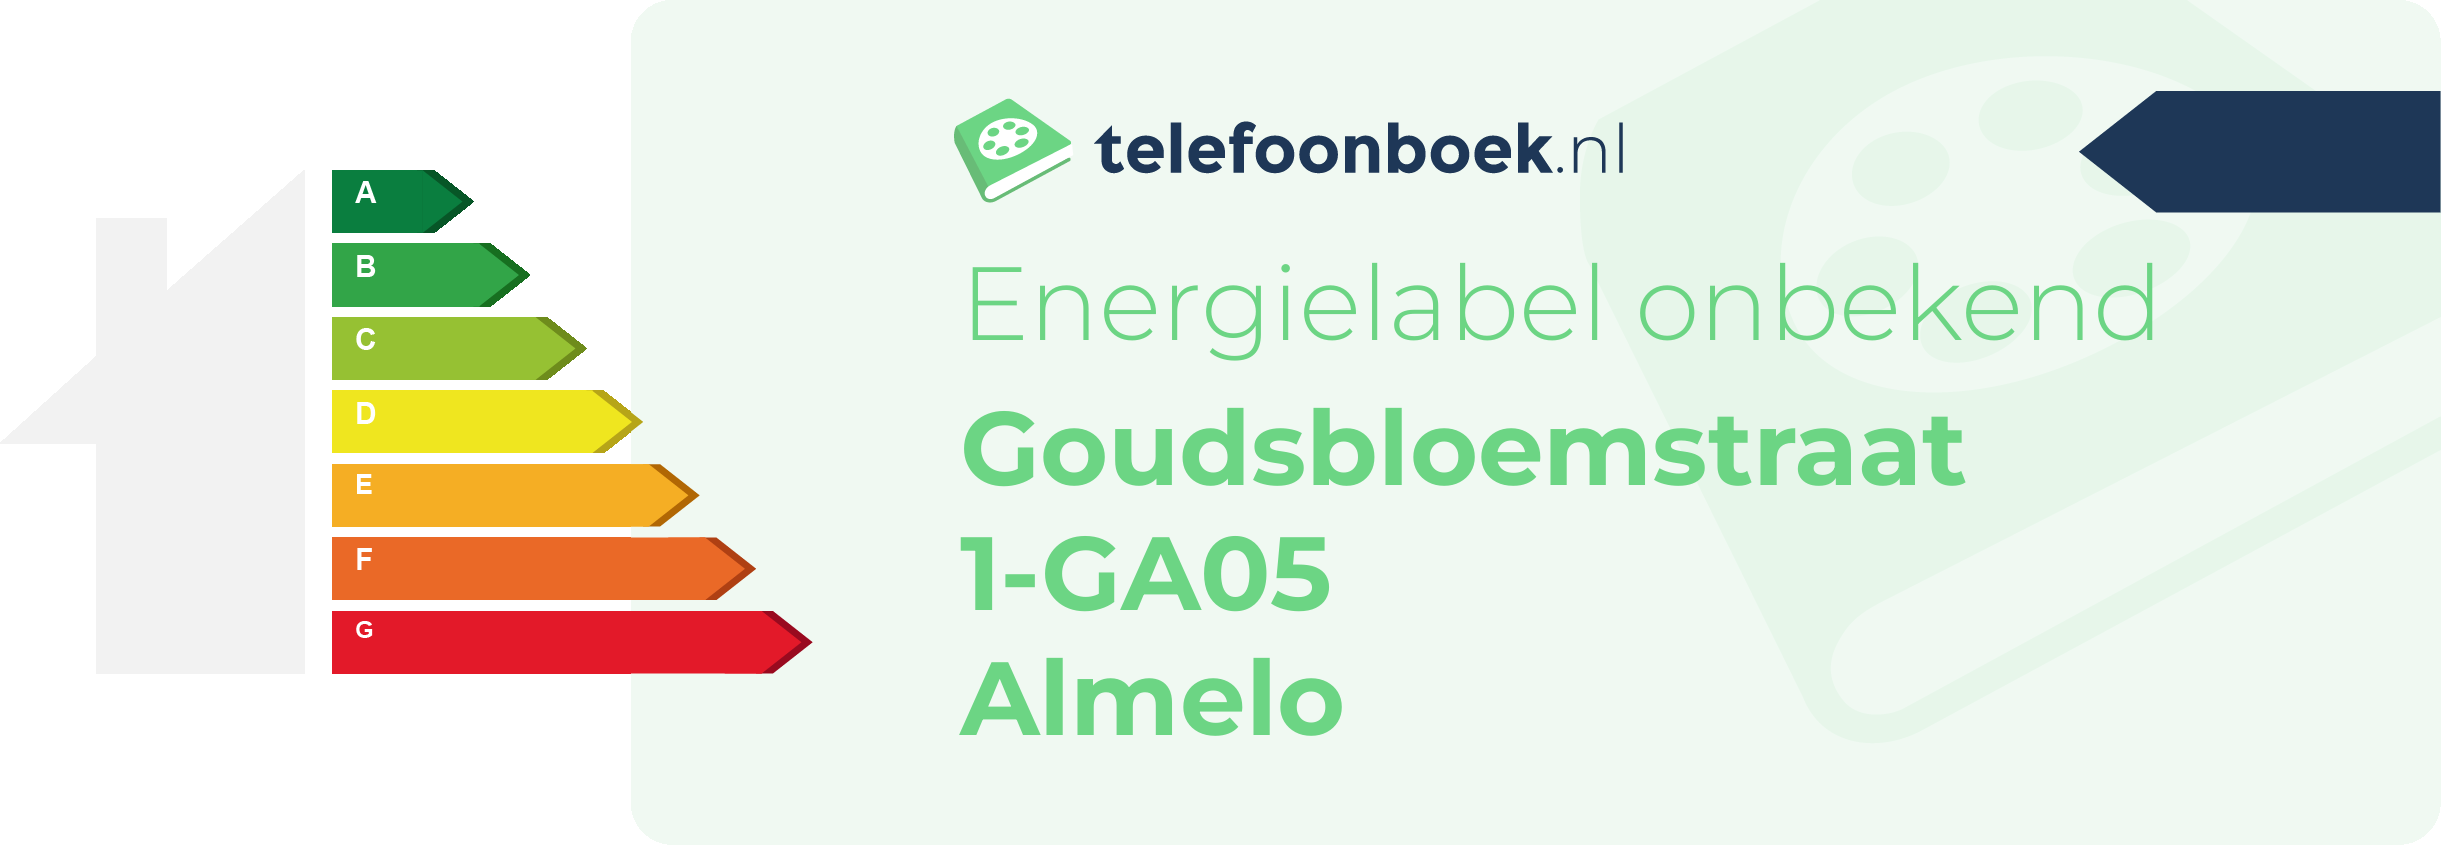 Energielabel Goudsbloemstraat 1-GA05 Almelo